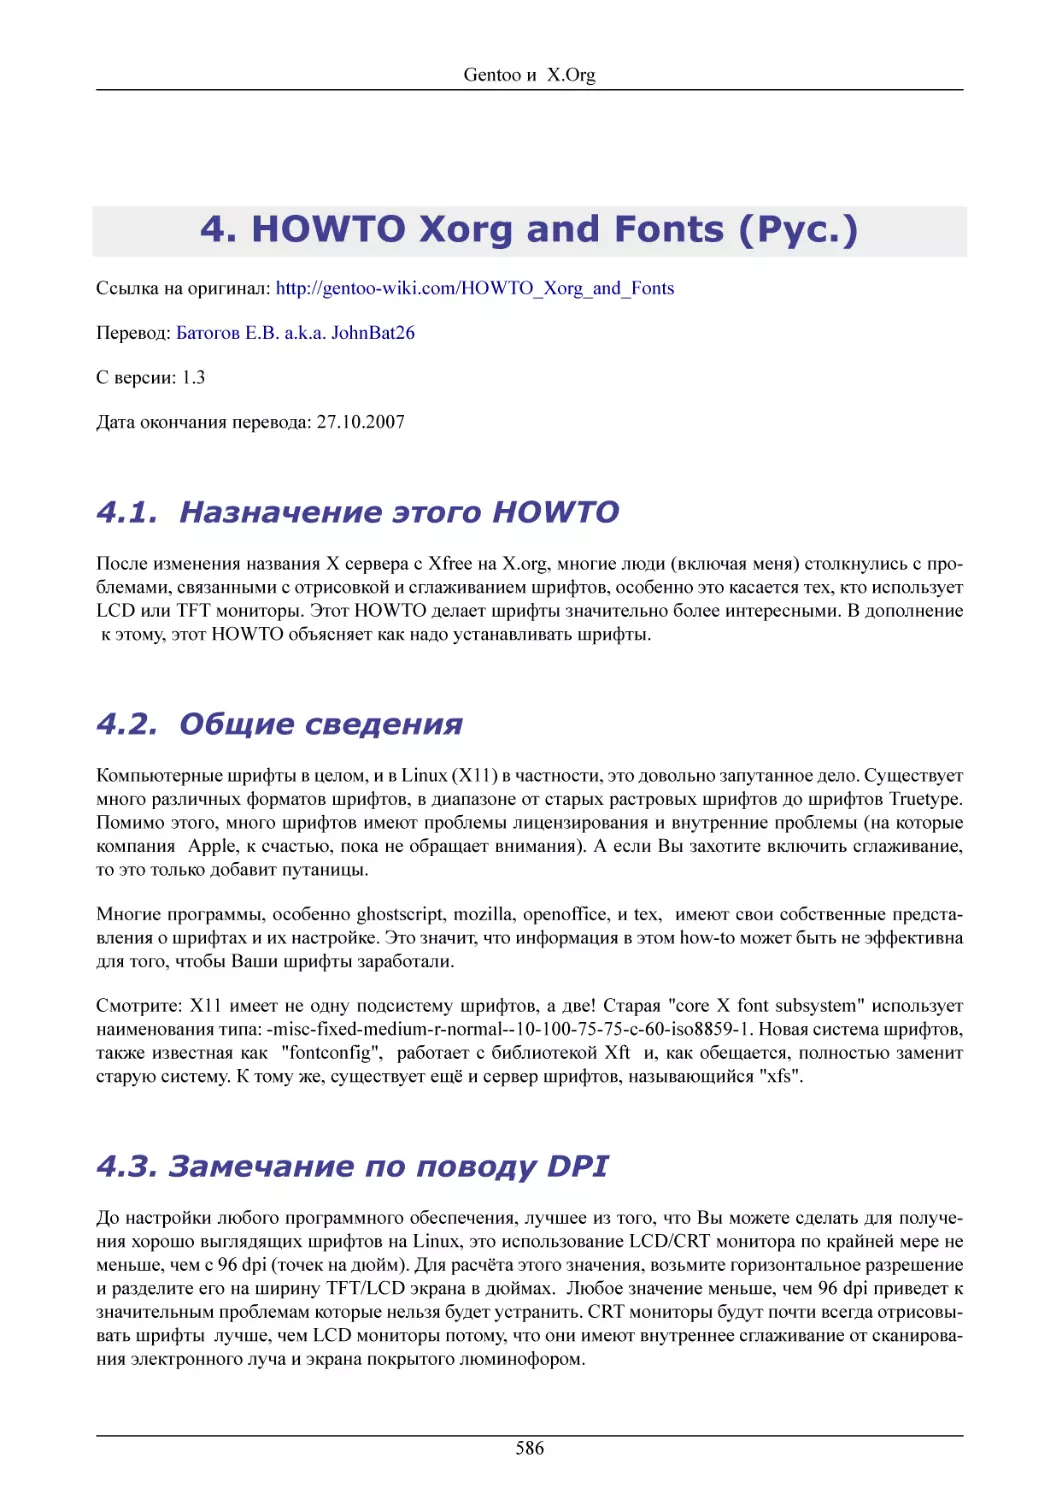 HOWTO Xorg and Fonts (Рус.)
 Назначение этого HOWTO
 Общие сведения
Замечание по поводу DPI